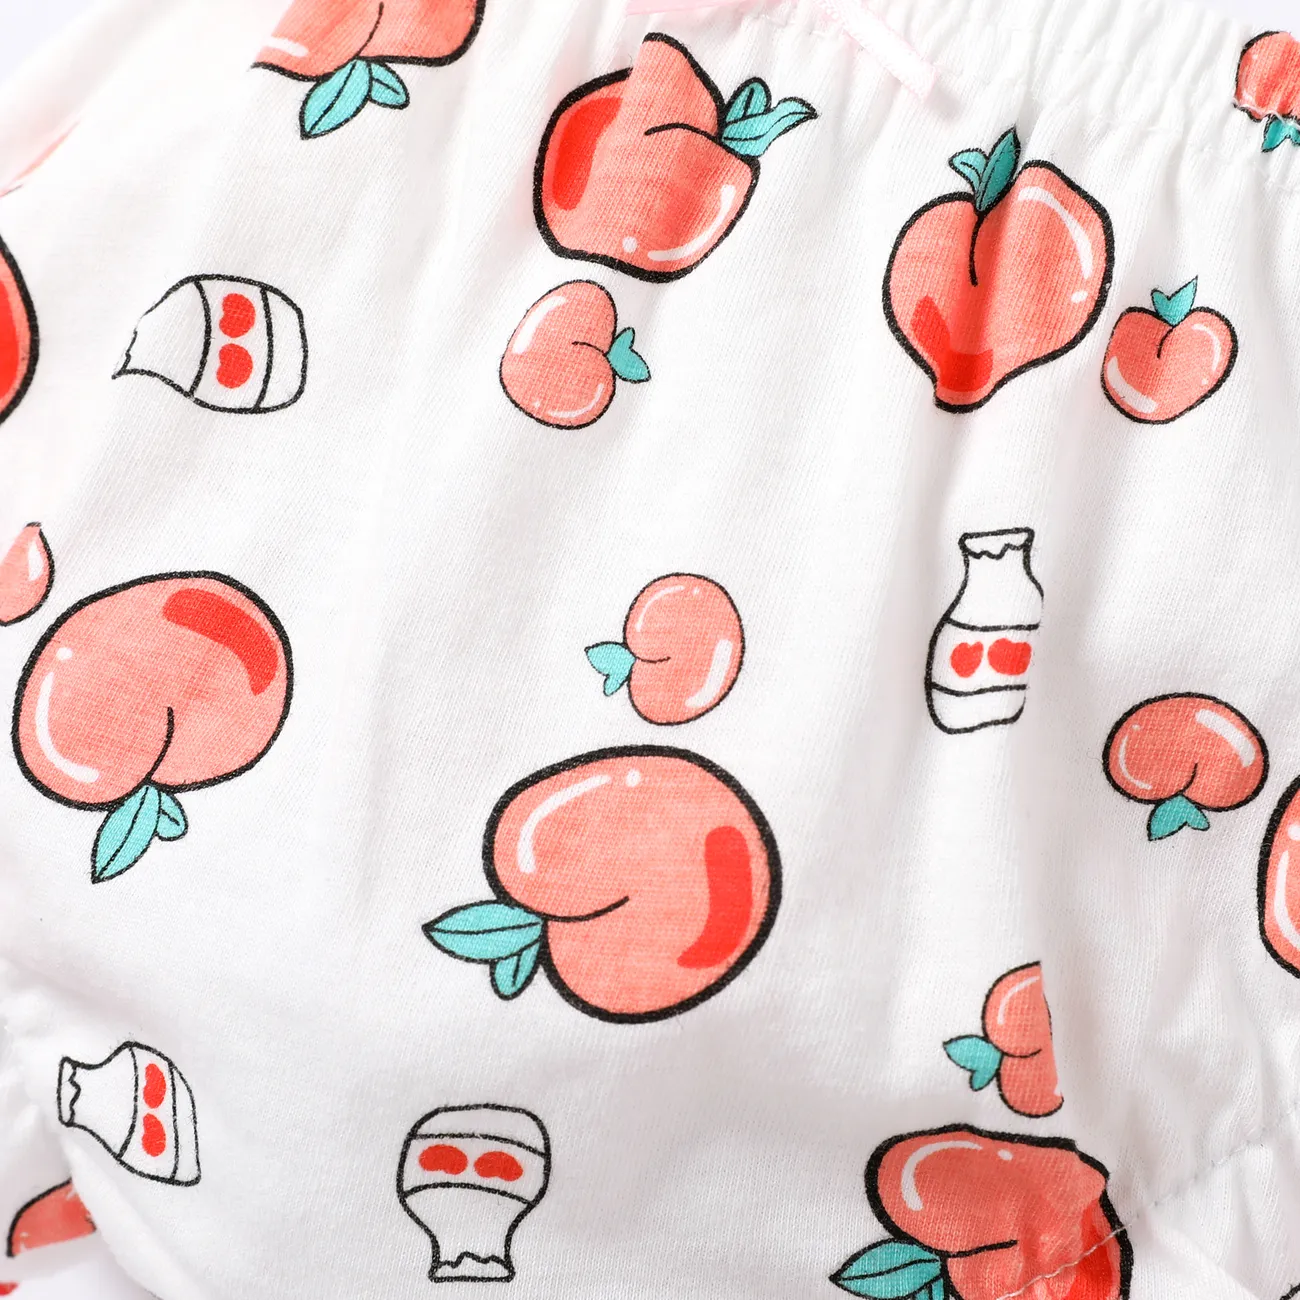 مجموعة ملابس داخلية للفتيات بحواف فطرية ومصنوعة من 100٪ قطن، تحتوي على فواكه وخضروات حلوة. زهري big image 1